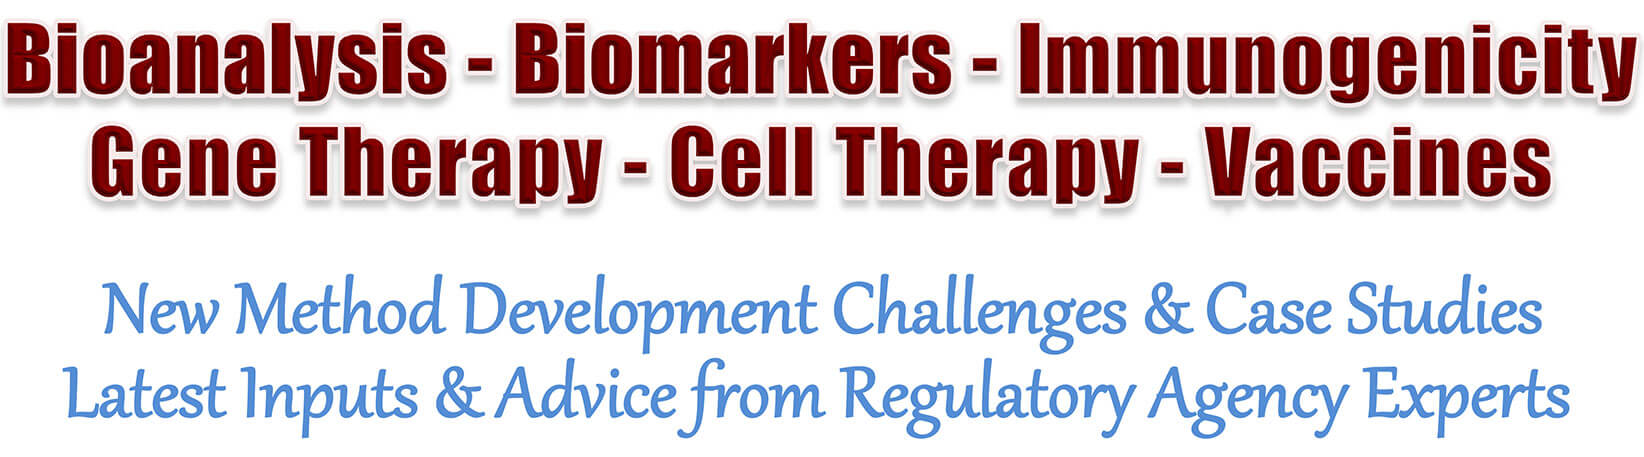 Bioanalysis-Biomarkers-Immunogenicity